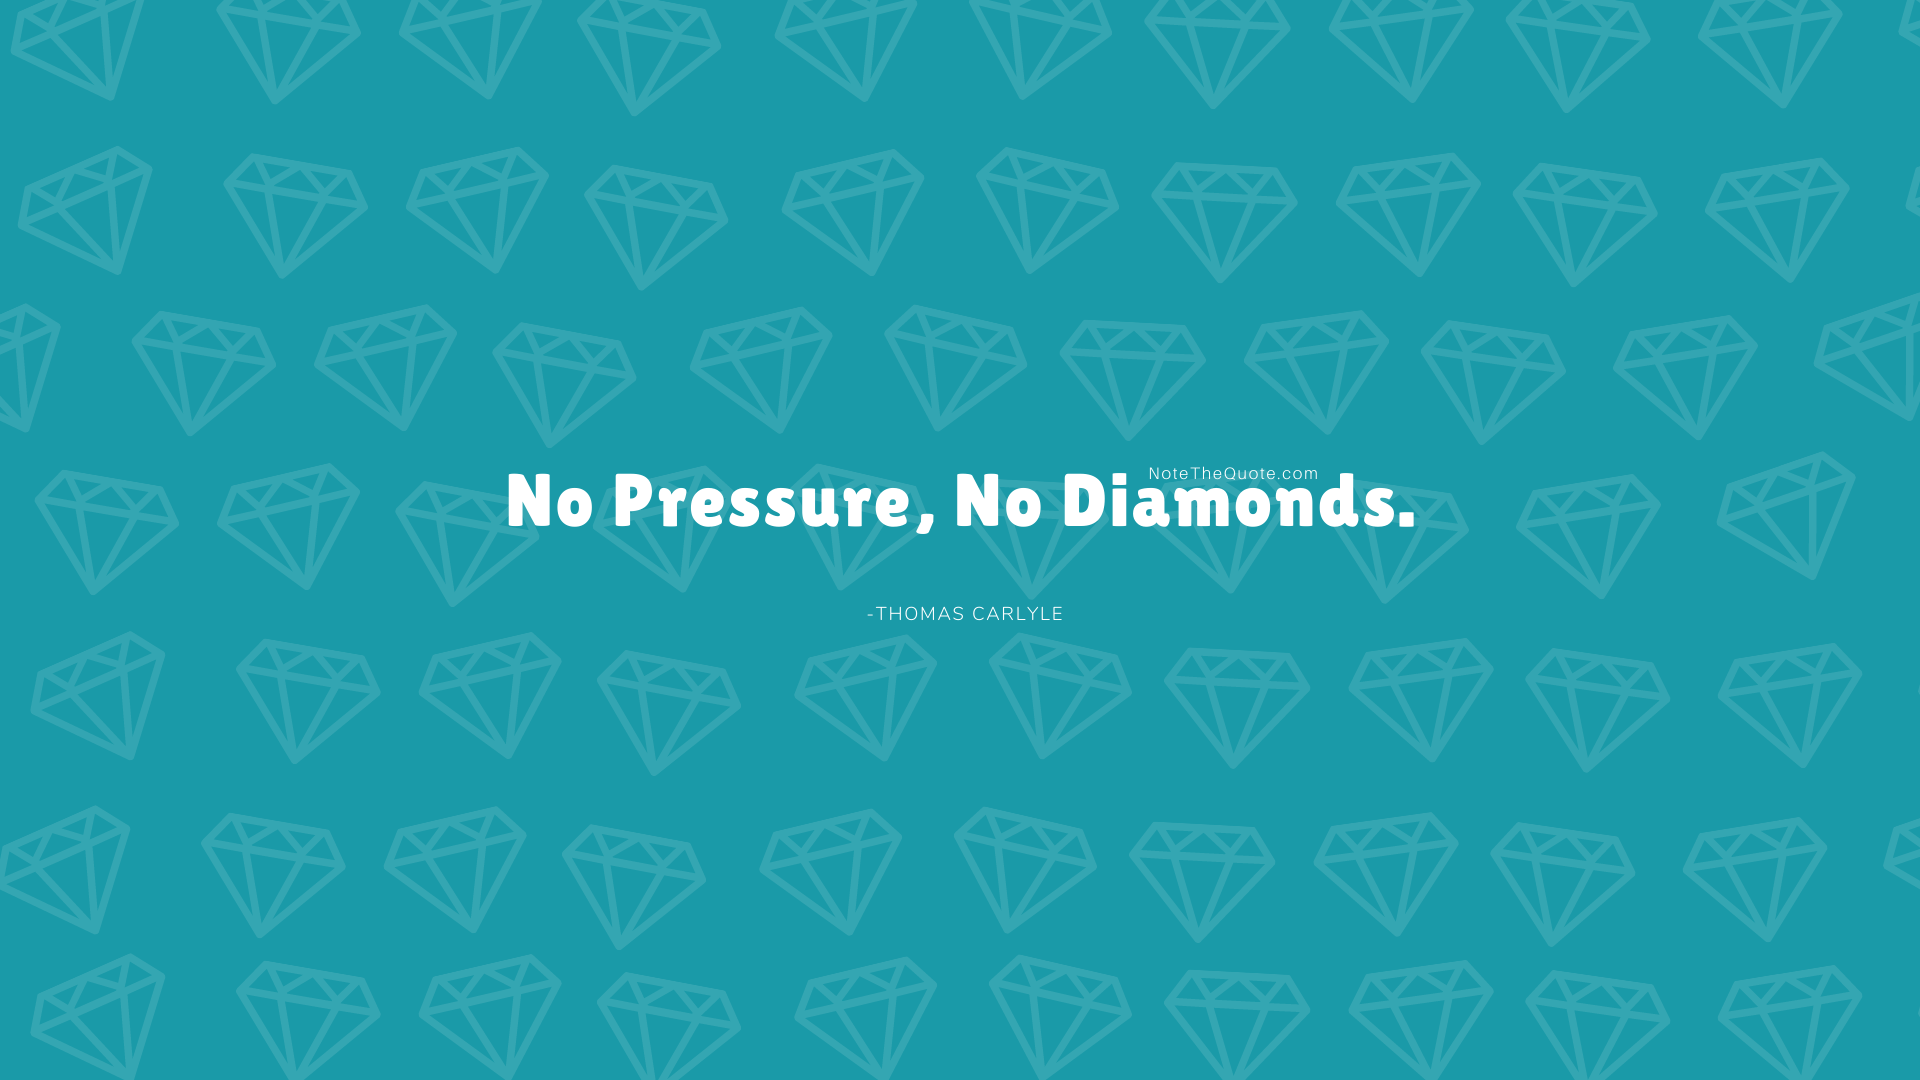 No pressure, no diamonds. The Quote